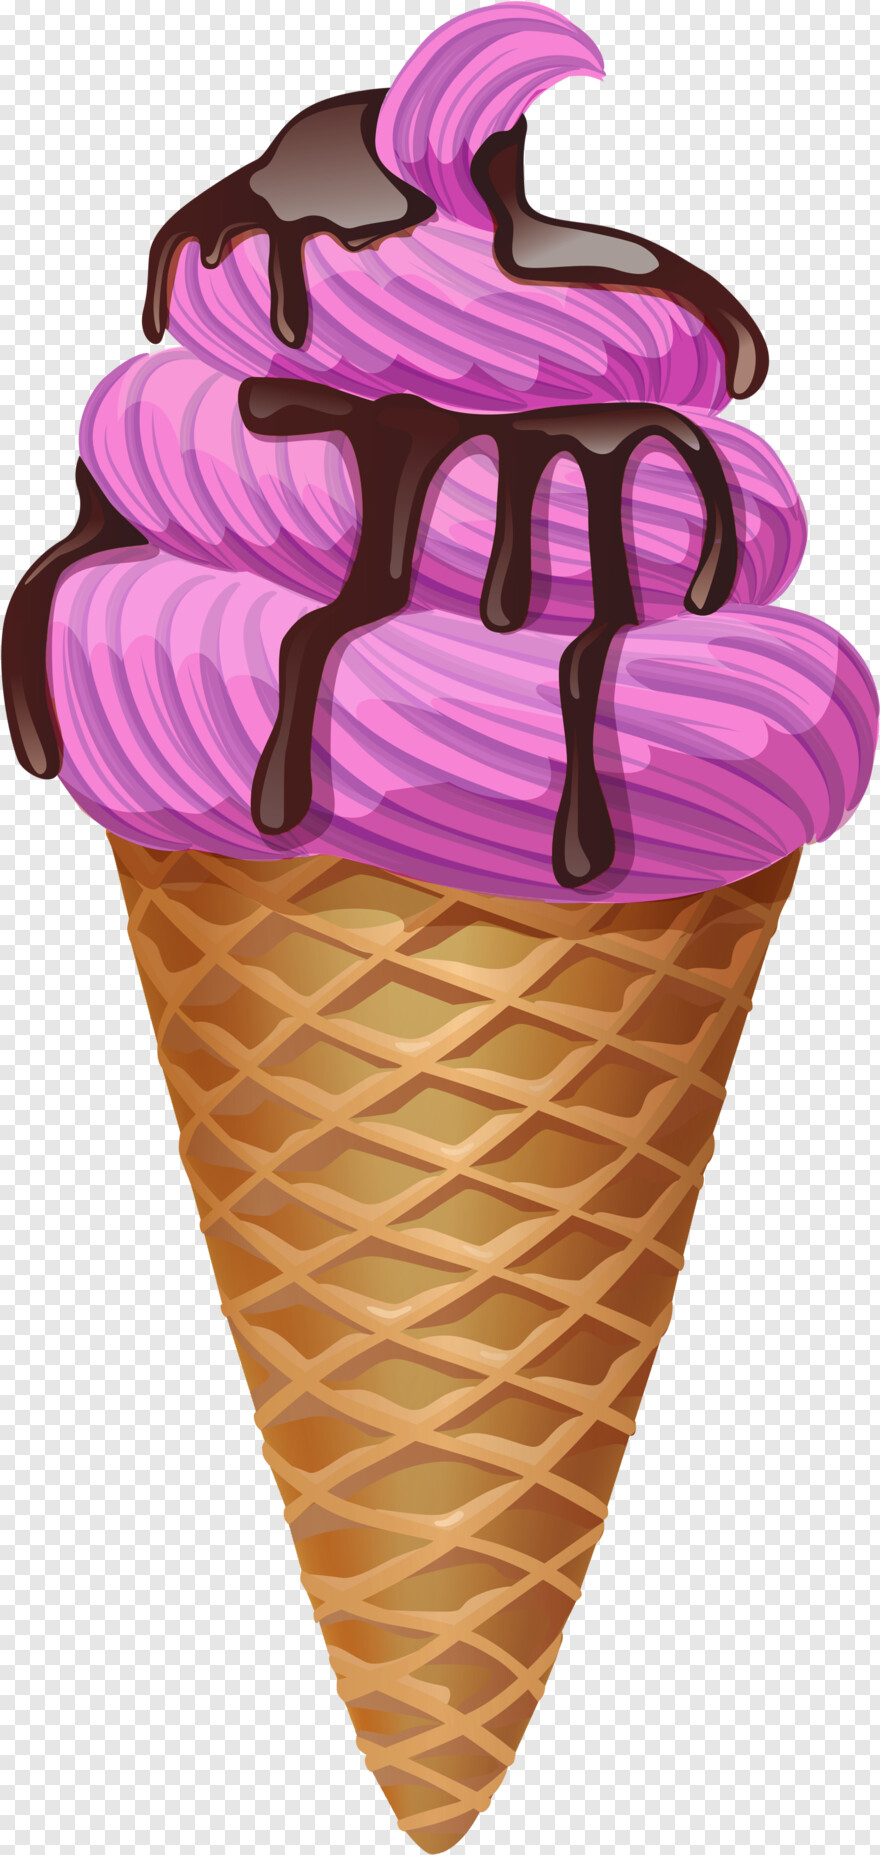 ice-cream-cone # 472144